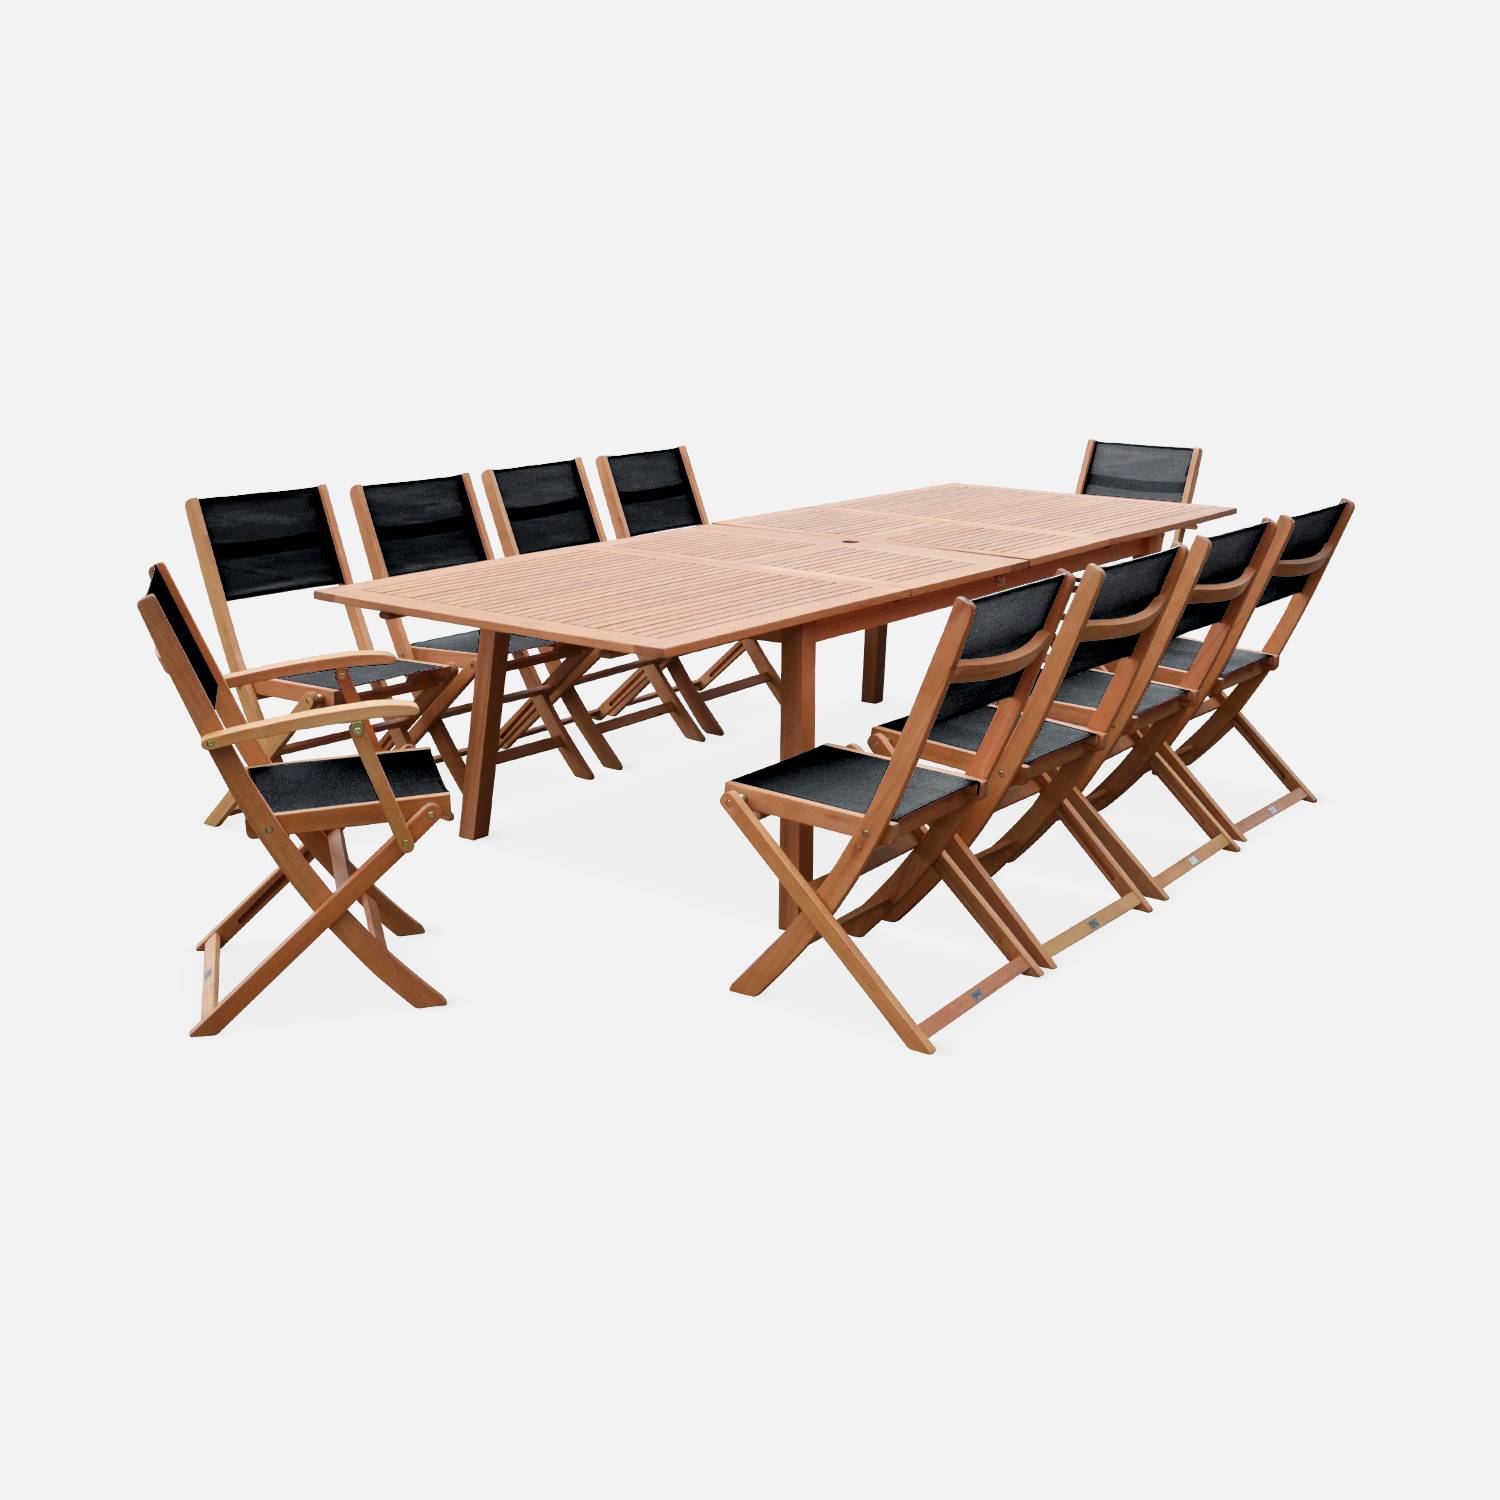 Ausziehbares Gartenmöbelset aus Holz - Almeria Tisch 200/250/300cm mit 2 Verlängerungsplatten, 2 Sesseln und 8 Stühlen, aus geöltem FSC Eukalyptusholz und schwarzem  Textilene Photo3